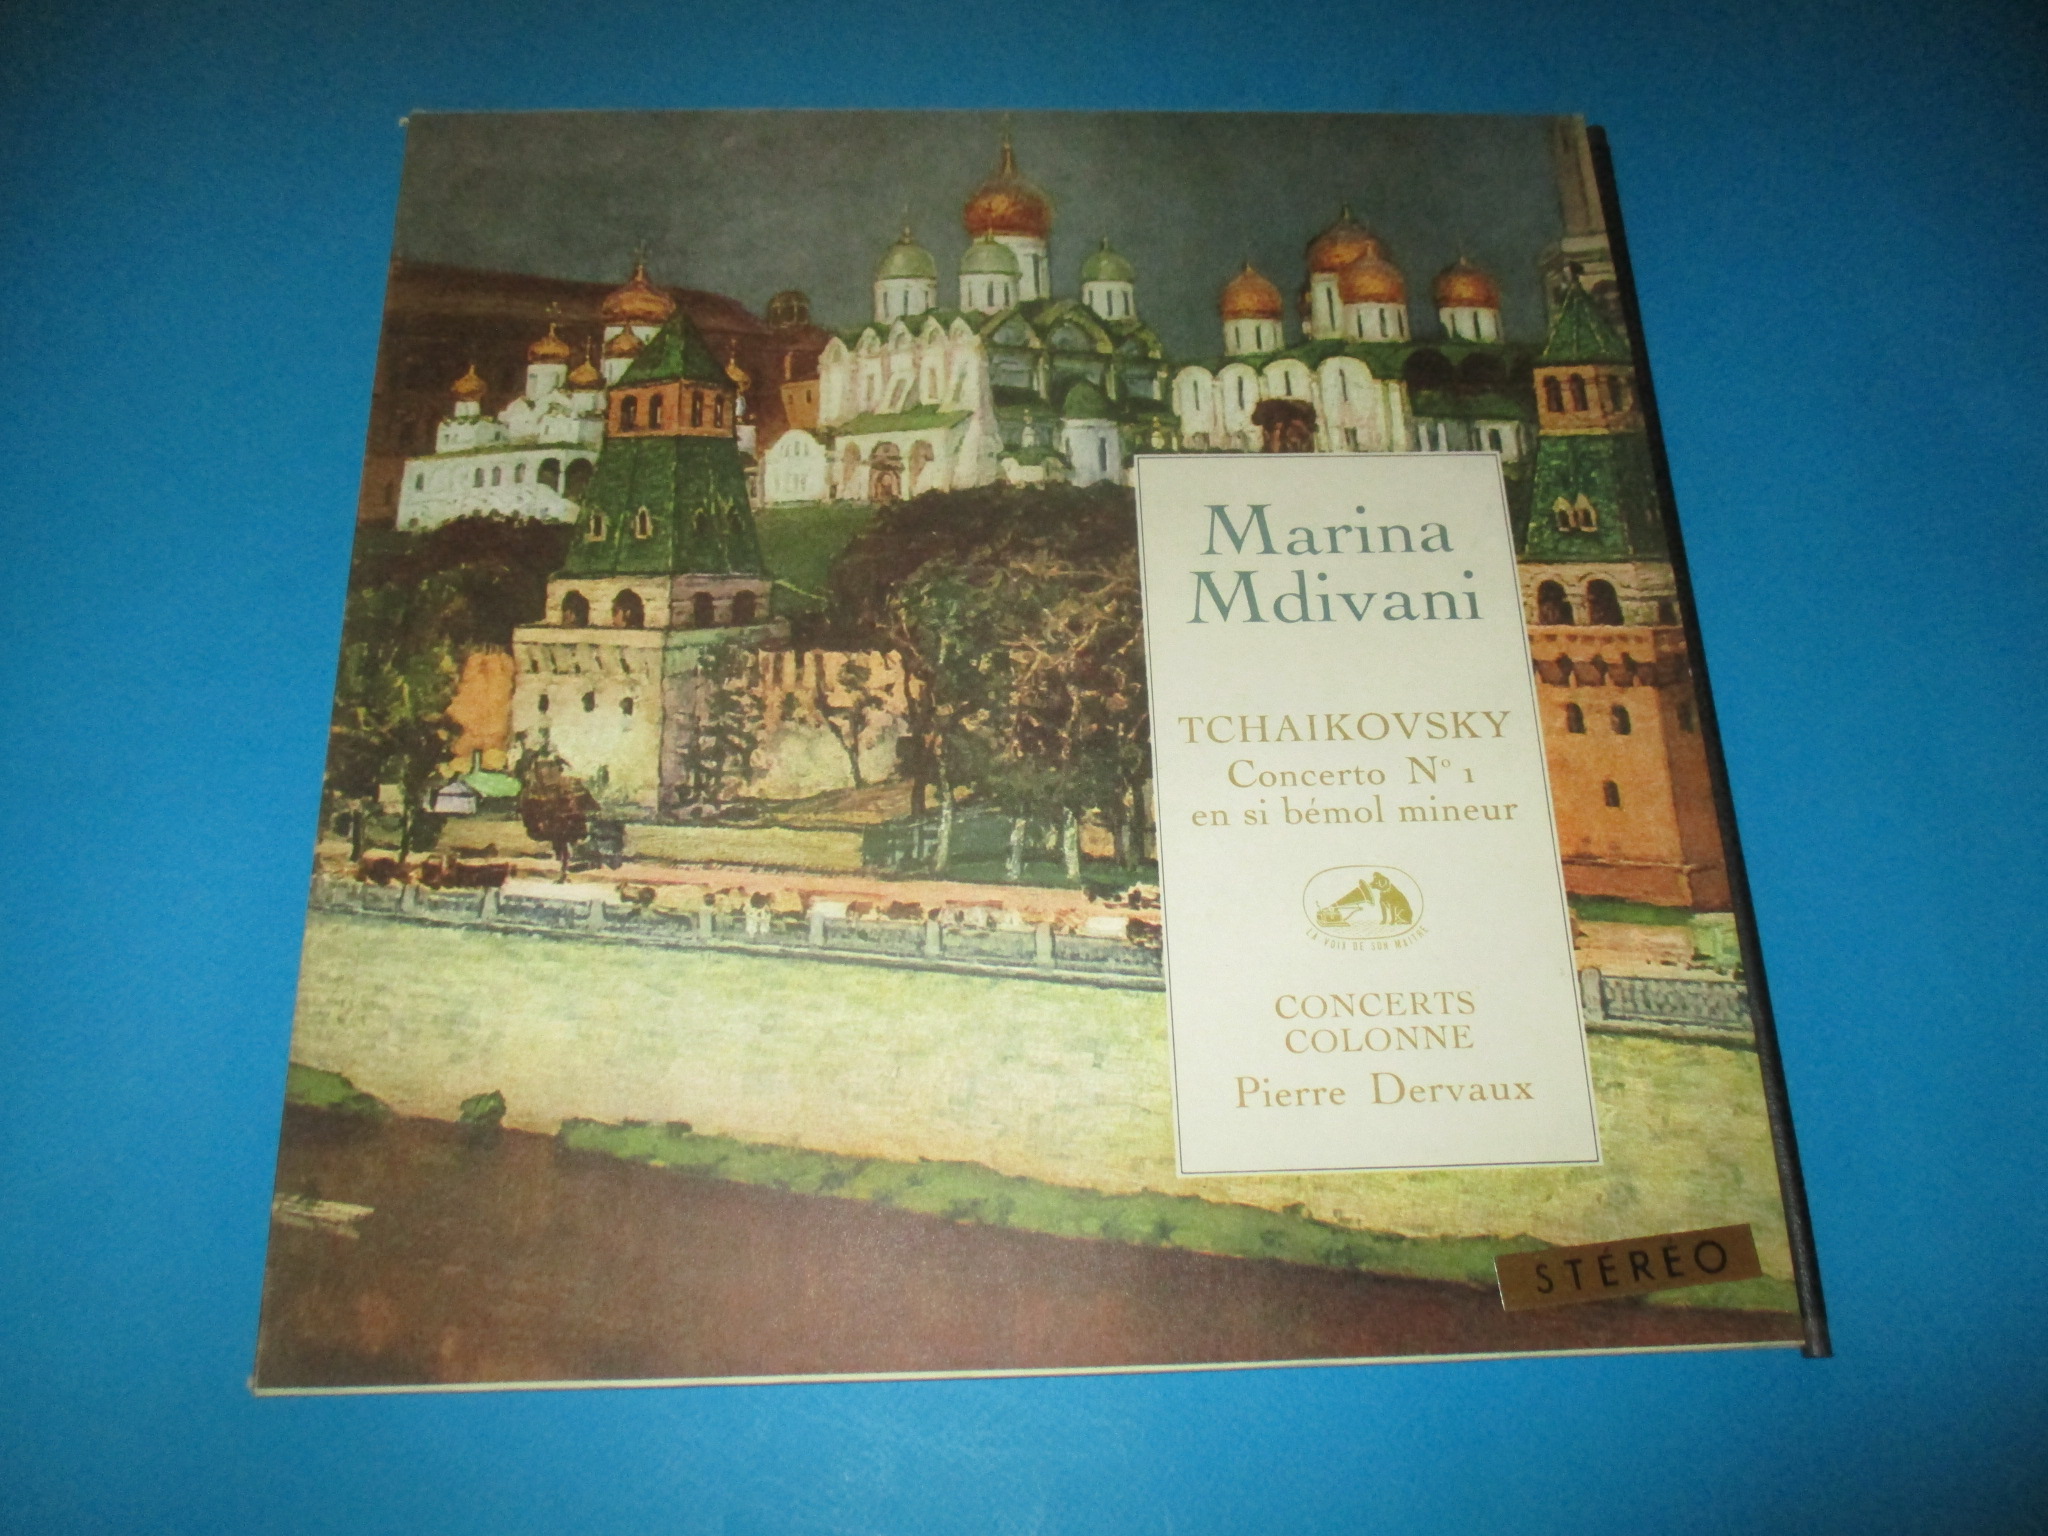 Disque Tchaikovsky Concerto n° 1 en si bémol mineur, Marina Mdivani, Concerts Colonne Pierre Dervaux 33 tours La Voix de son Maître